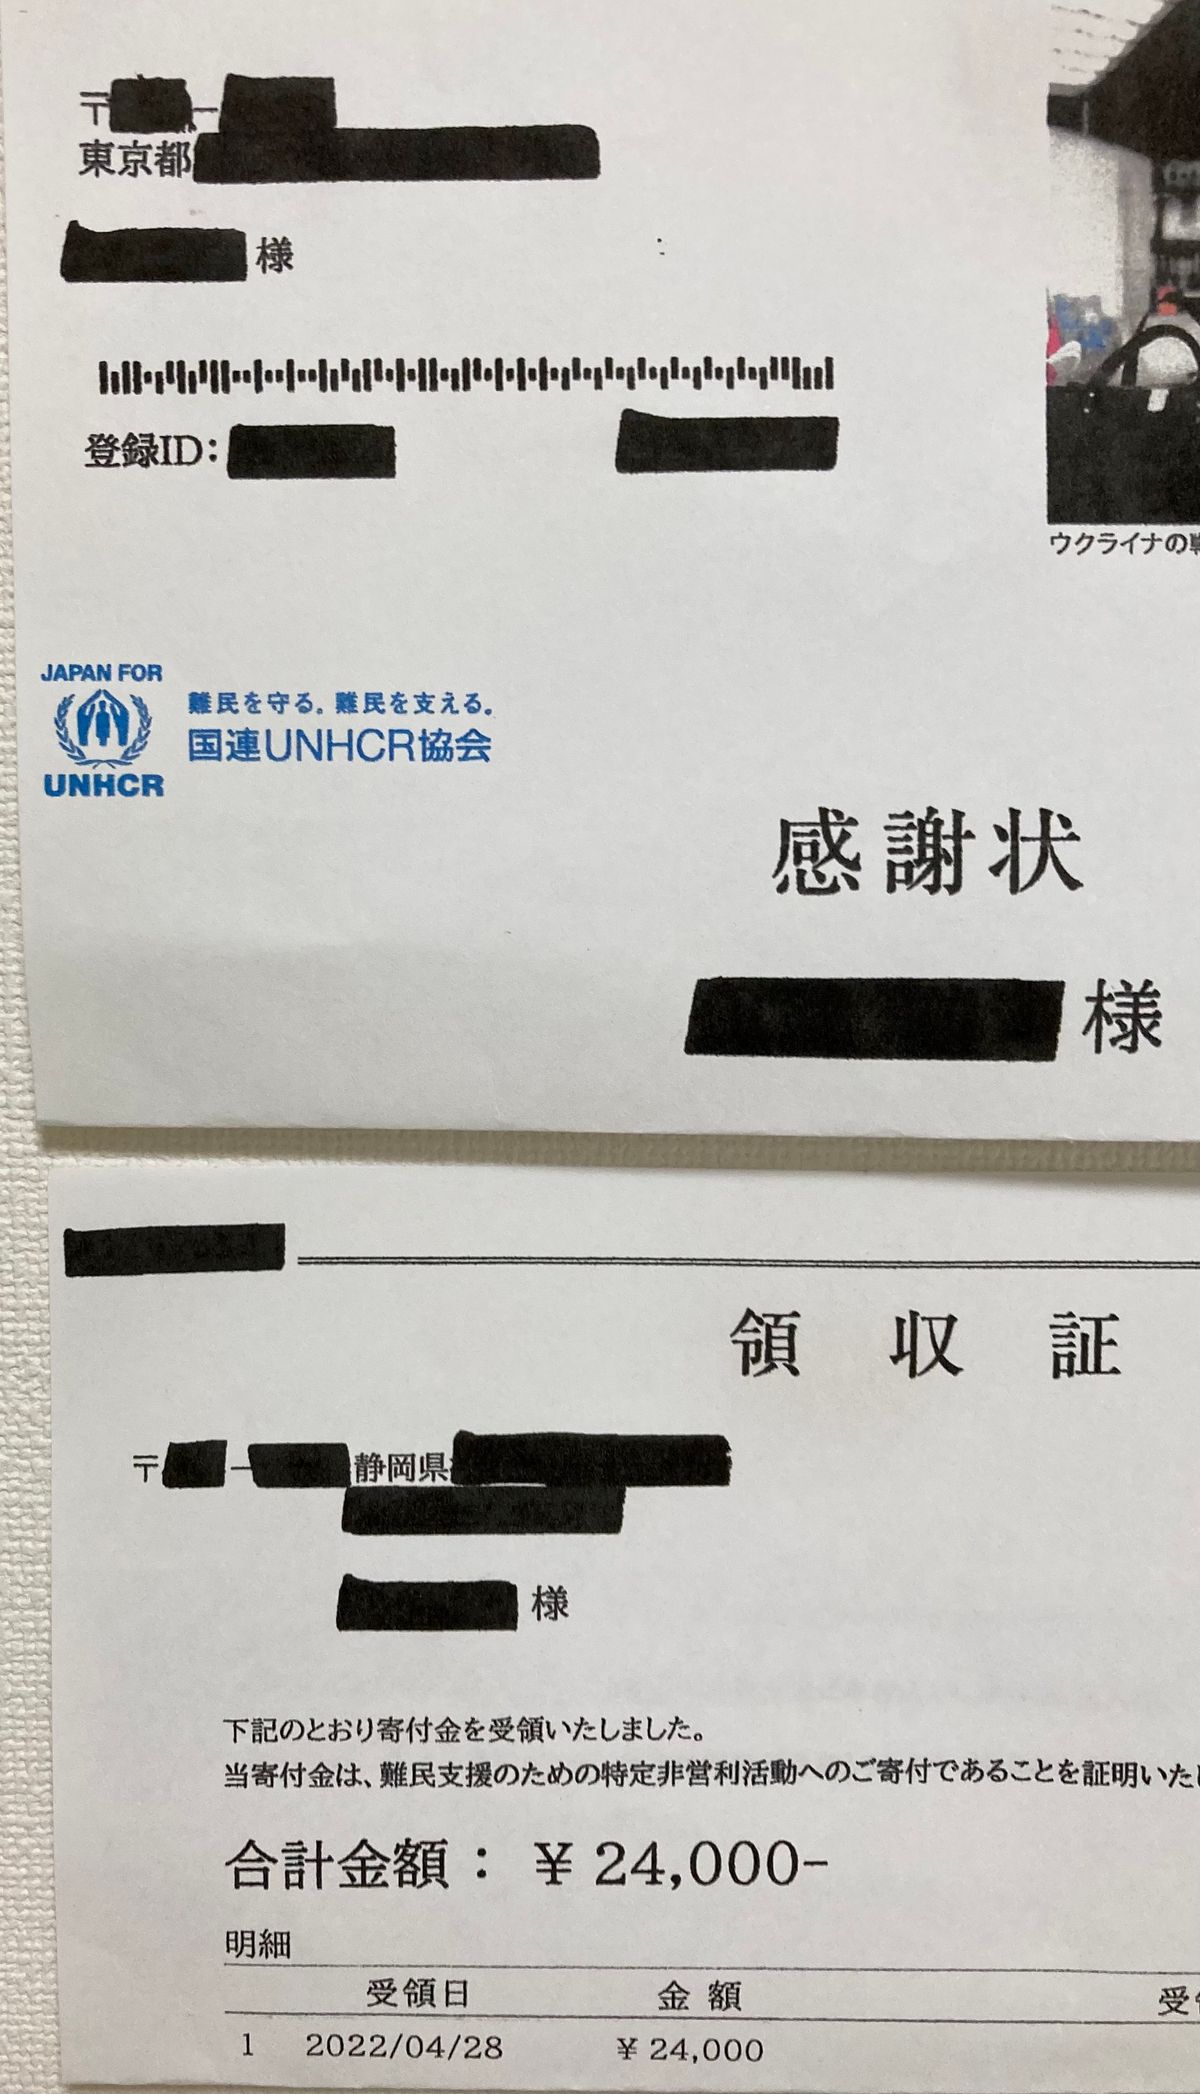 東京都の住所に届いた静岡県の支援者の領収書※一部加工してます